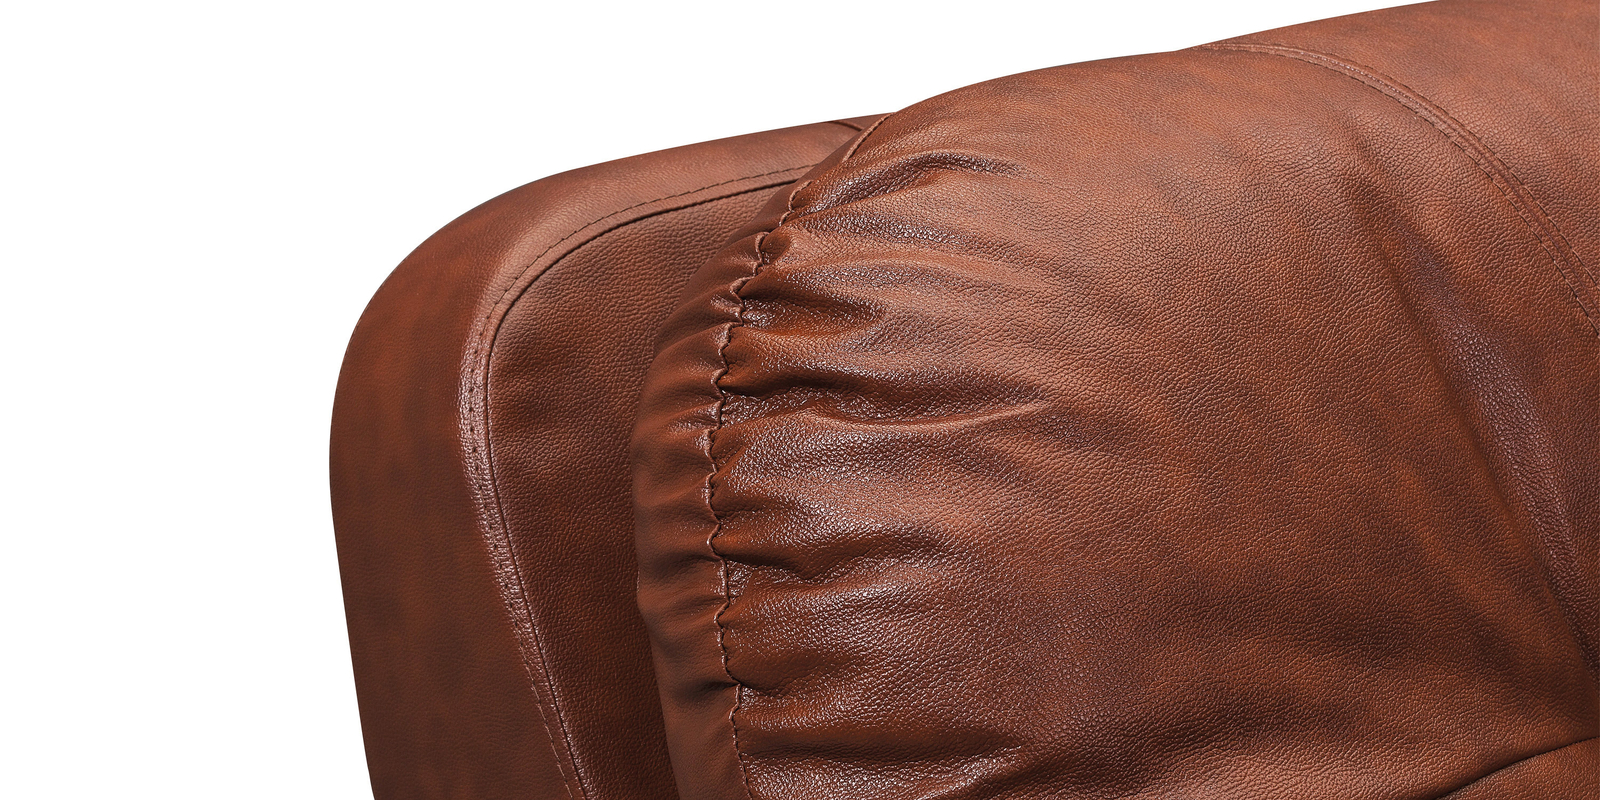 Купить диван кожаный угловой Бристоль Коричневый (Кожаное изделие, правый) по цене 89 990 рублей в Санкт-Петербурге